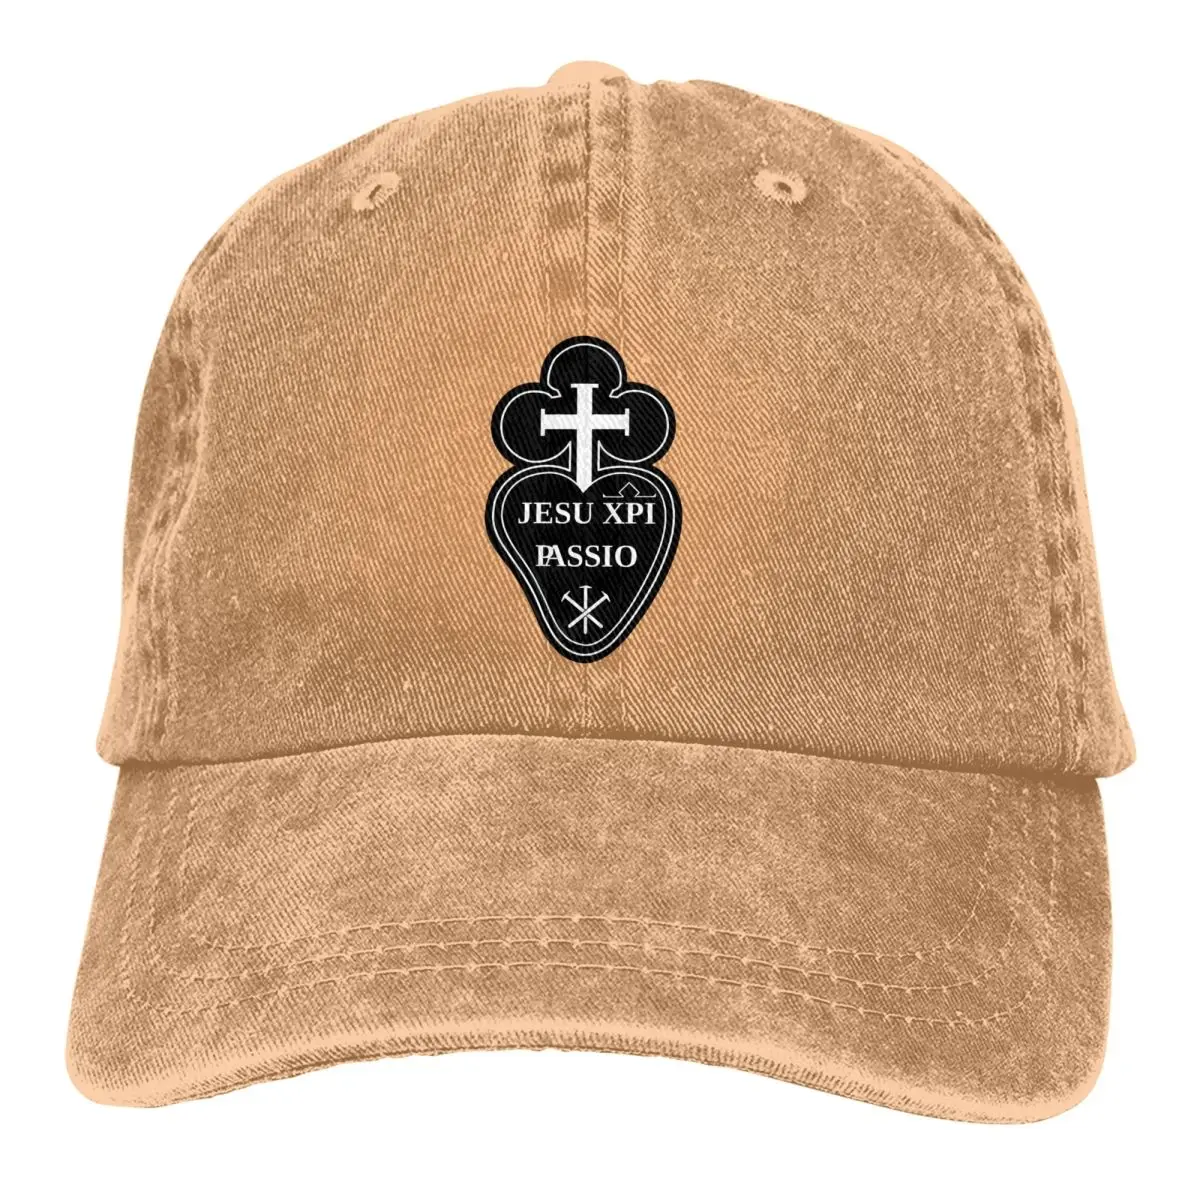 

Summer Cap Sun Visor XPI Passio The Passionist Emblem The Passion Christ Hip Hop Caps Jesus God Cross Cowboy Hat Peaked Hats